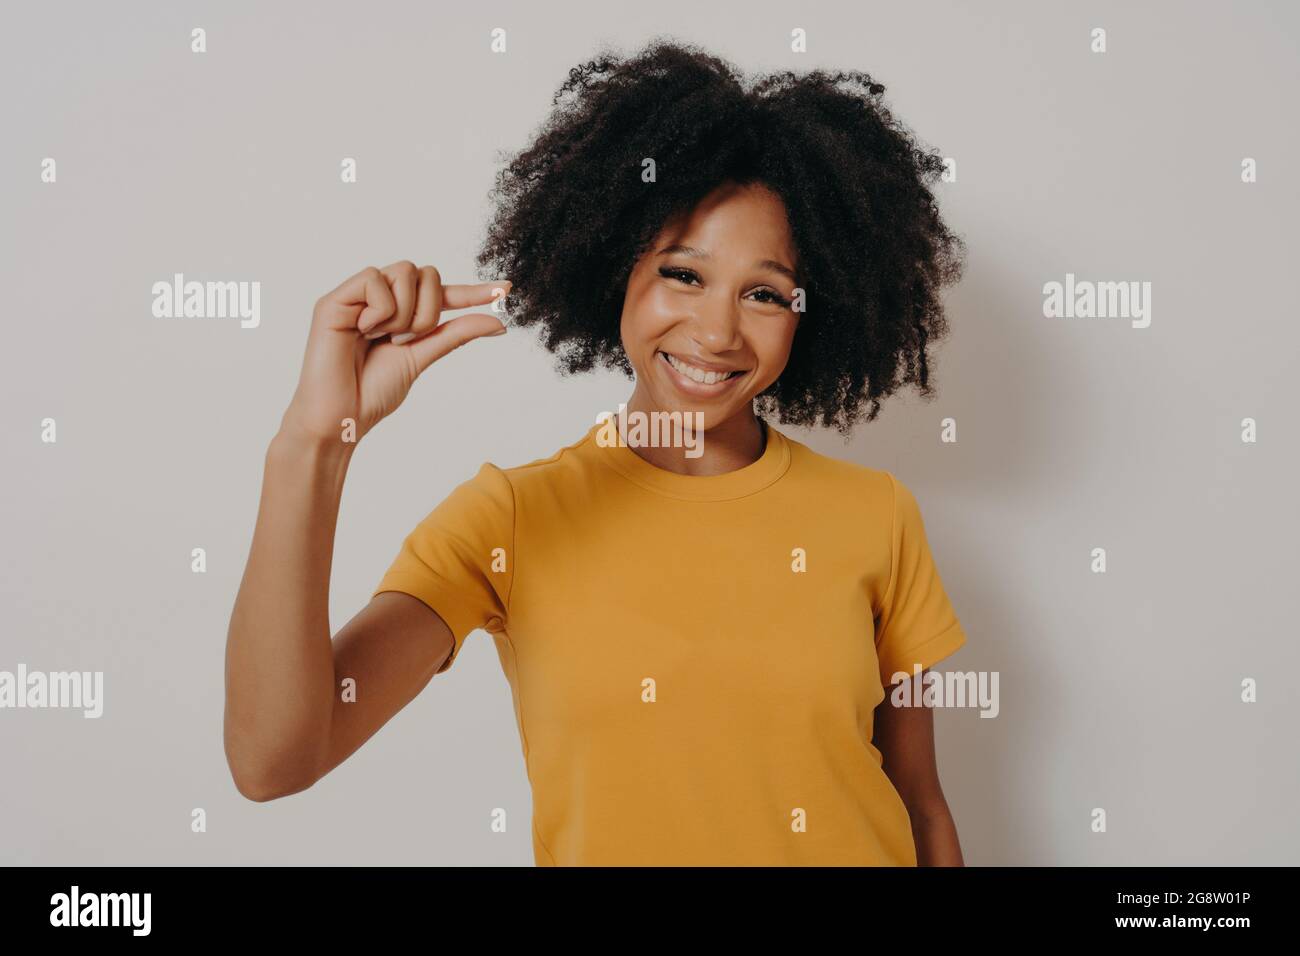 Souriante et gaie, une femme afro-américaine fait des gestes de petite taille avec les doigts Banque D'Images